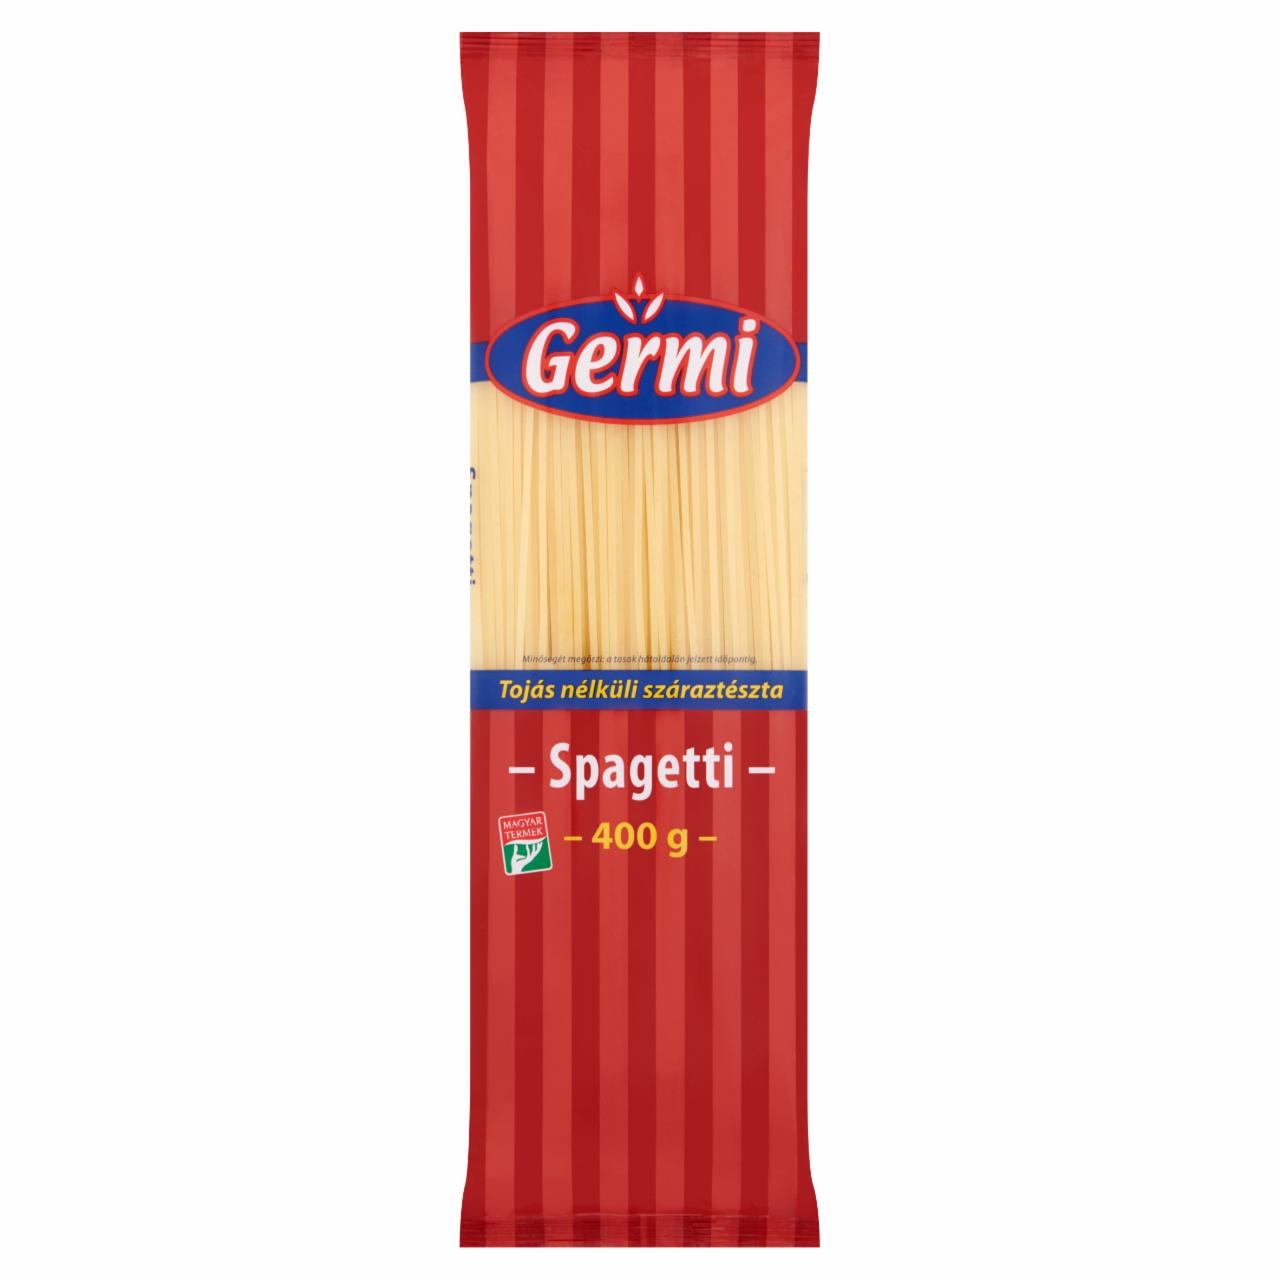 Képek - Germi spagetti tojás nélküli száraztészta 400 g